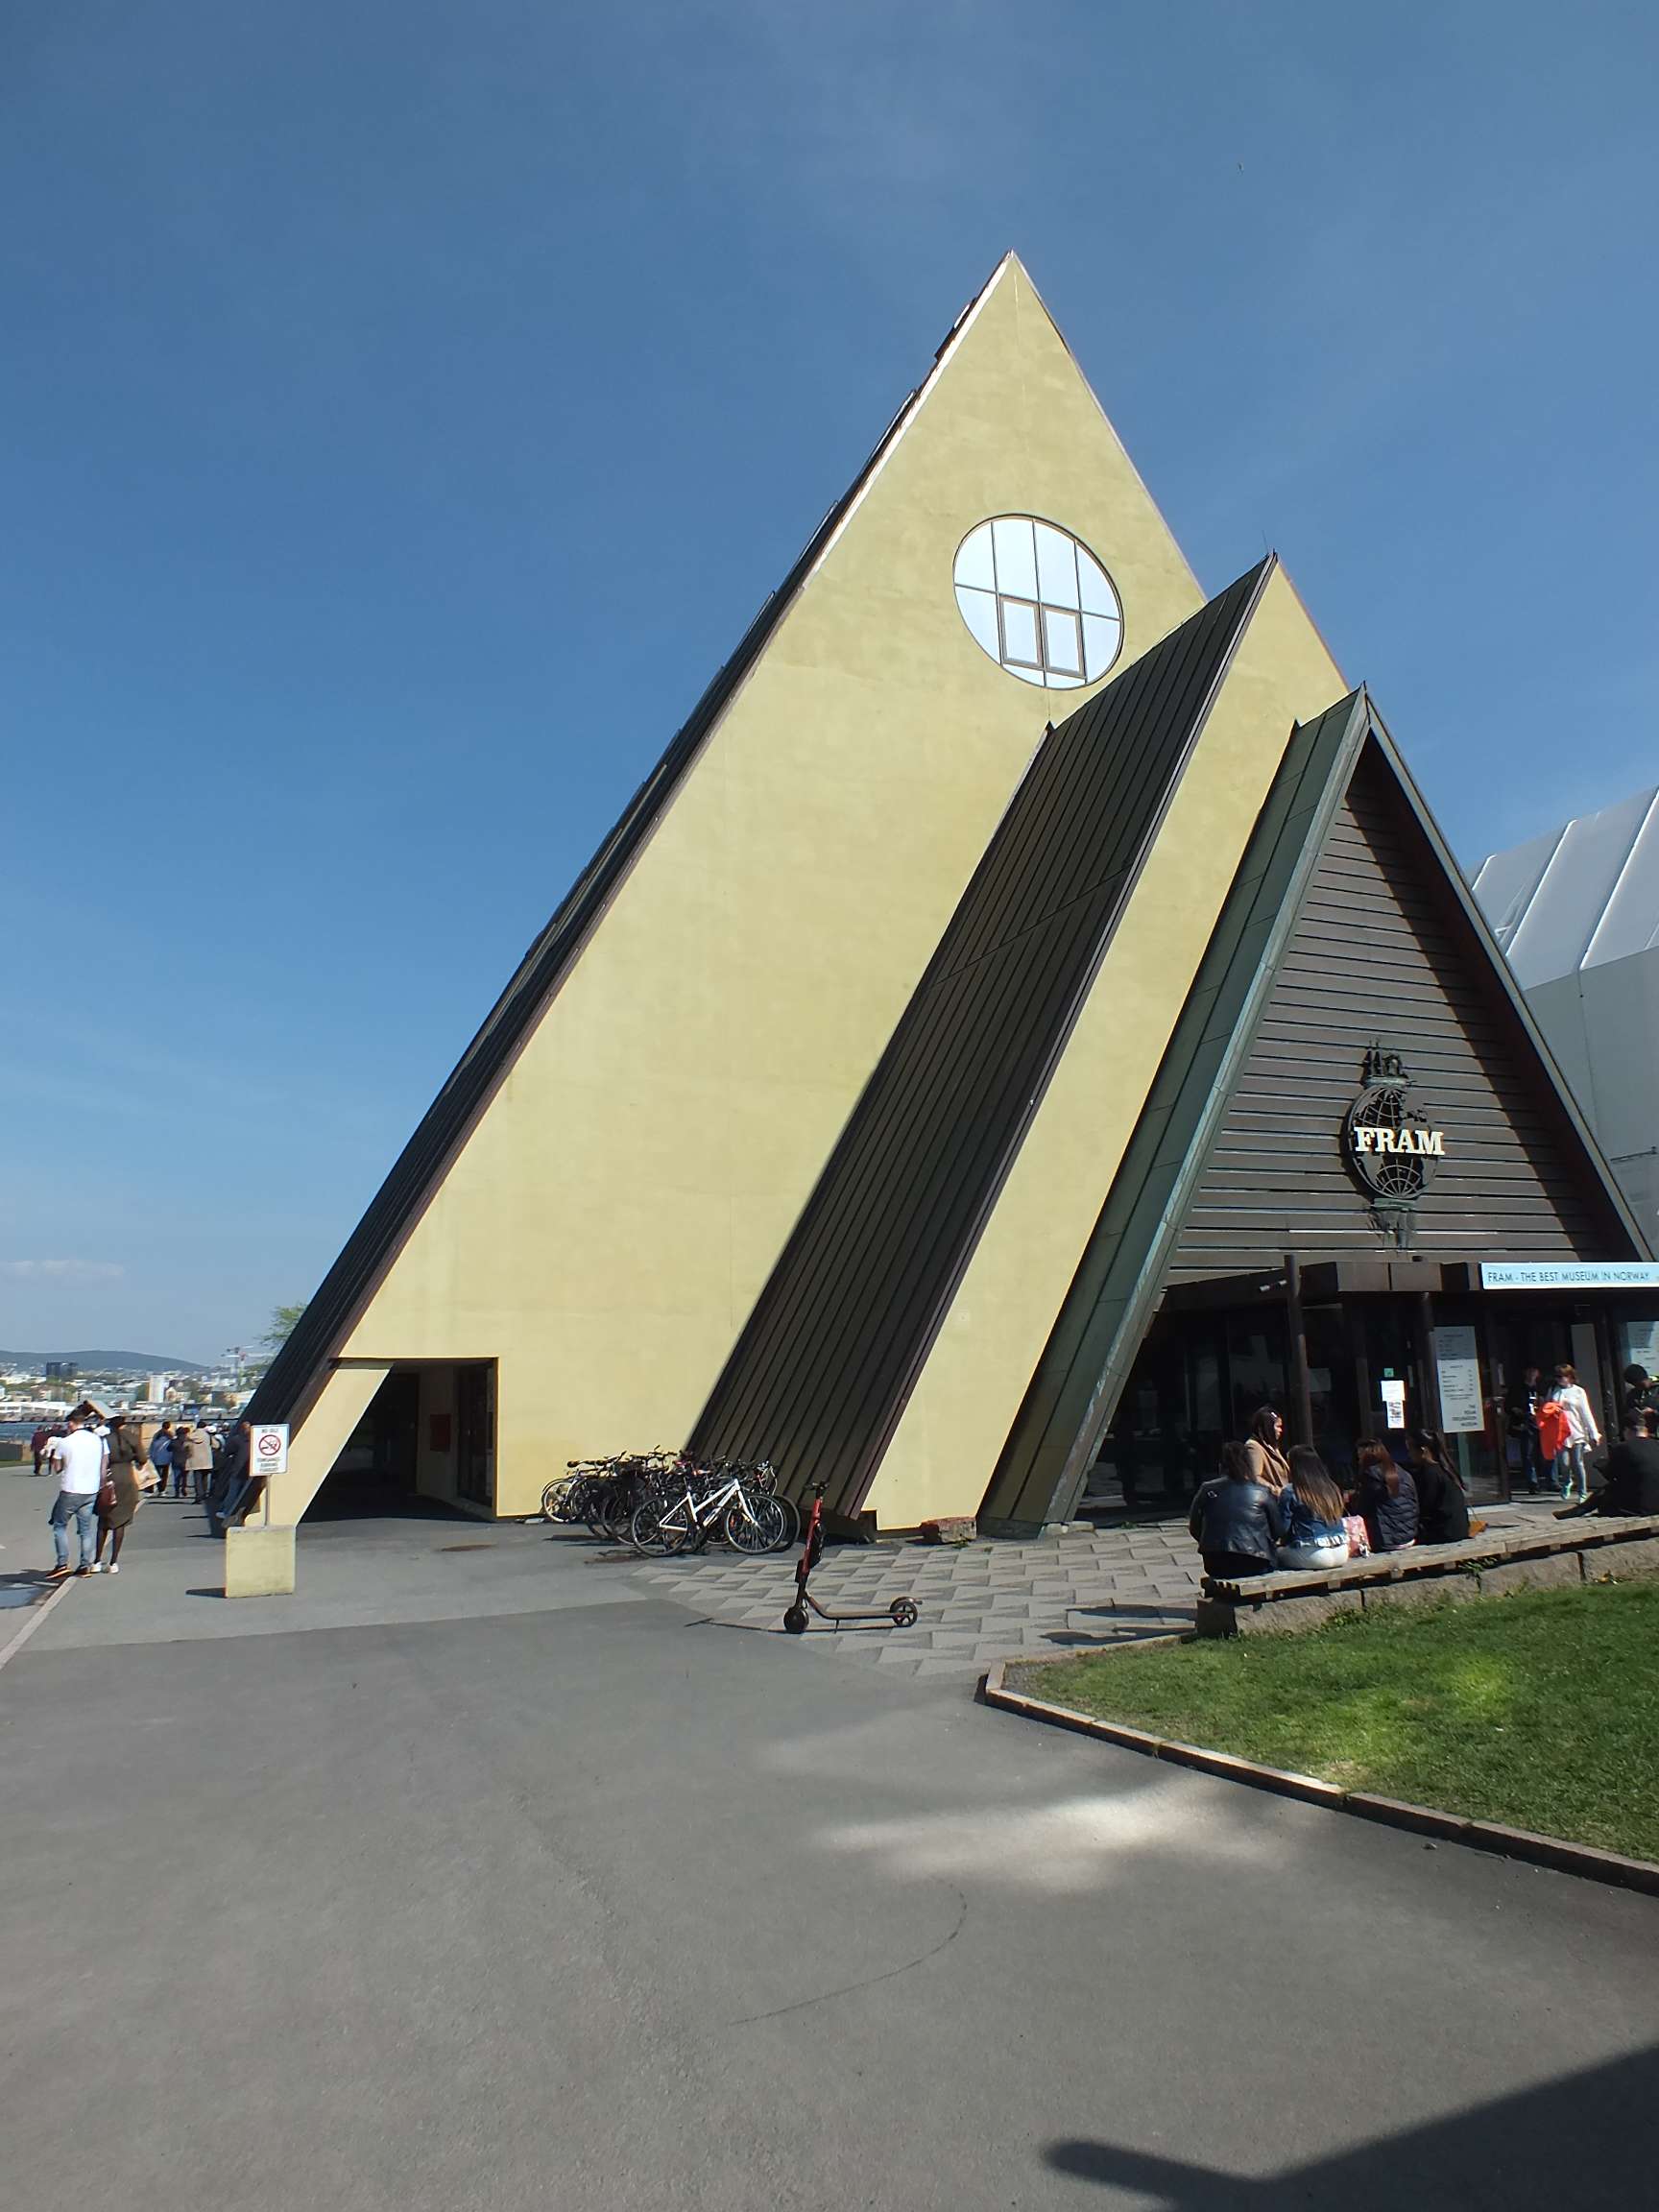 Fram Müzesi (Fram Polarskip Museet)